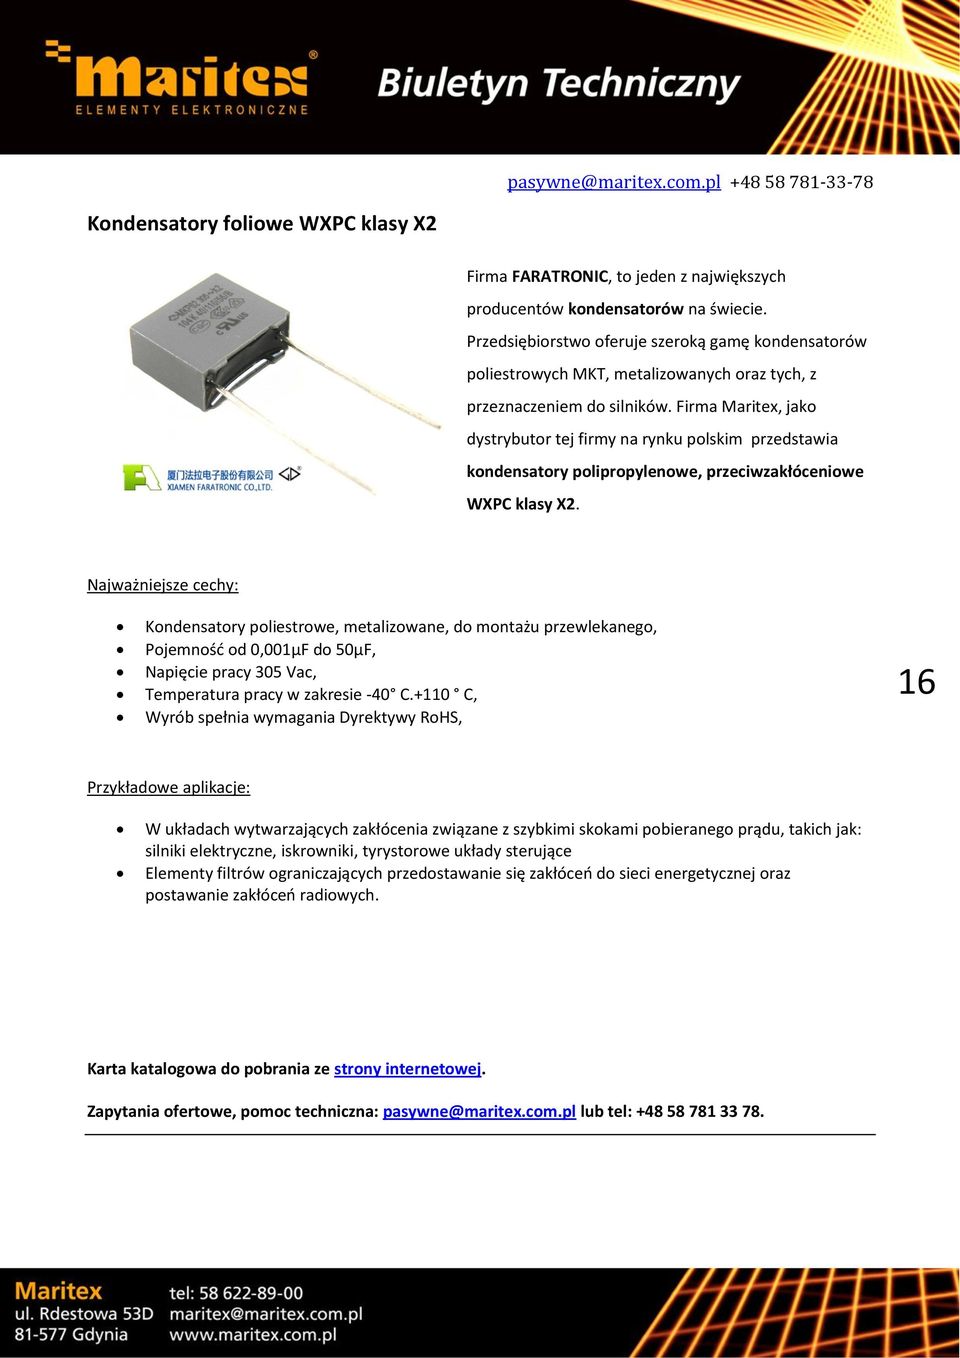 Firma Maritex, jako dystrybutor tej firmy na rynku polskim przedstawia kondensatory polipropylenowe, przeciwzakłóceniowe WXPC klasy X2.